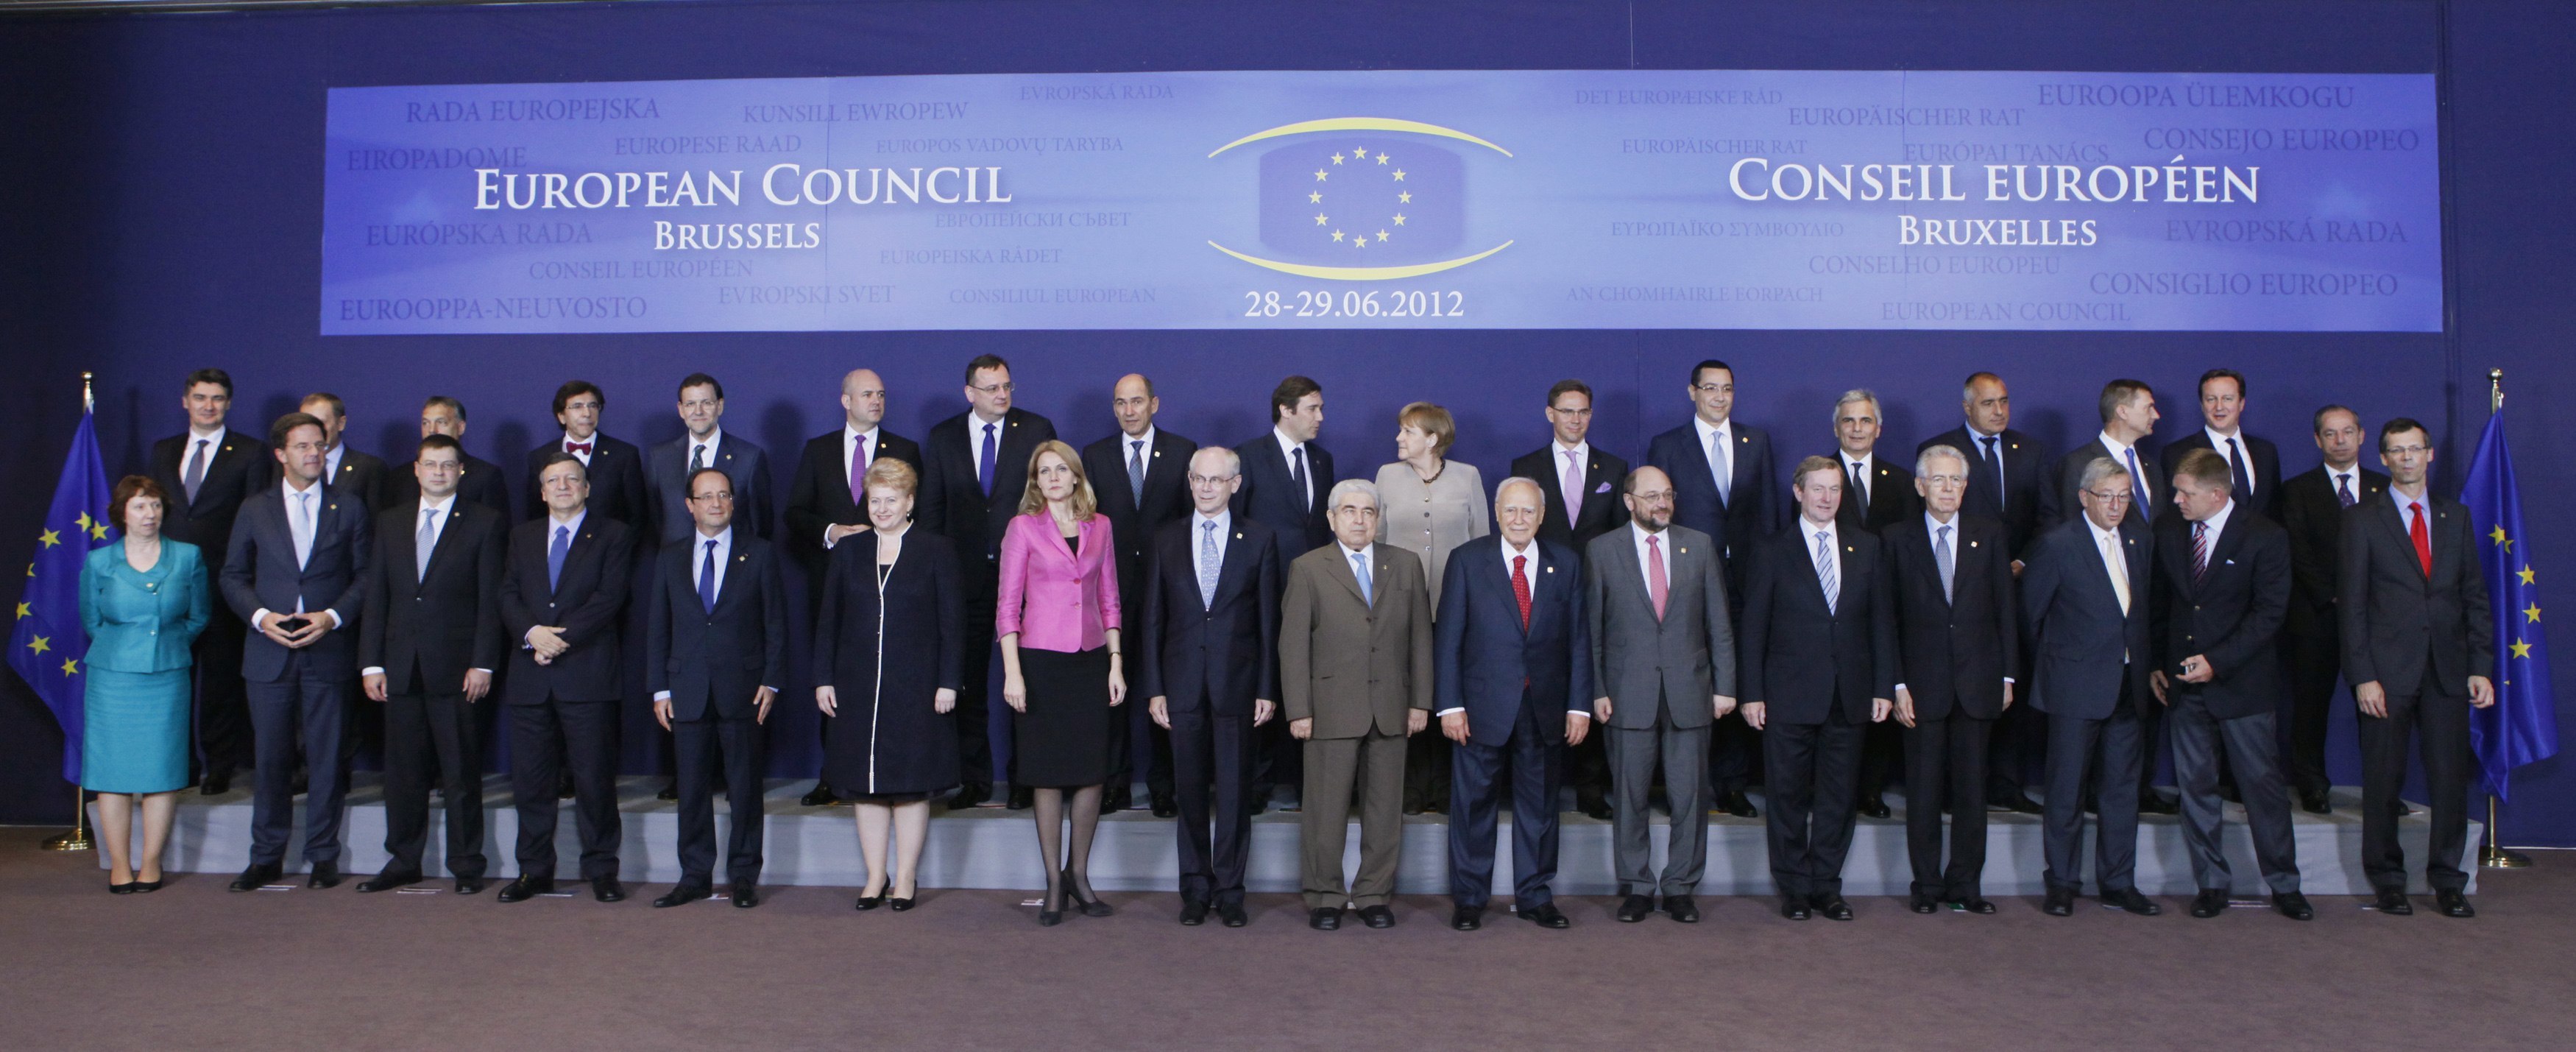 Πότε θα οριστεί τελικά ο νέος πρόεδρος του Εurogroup